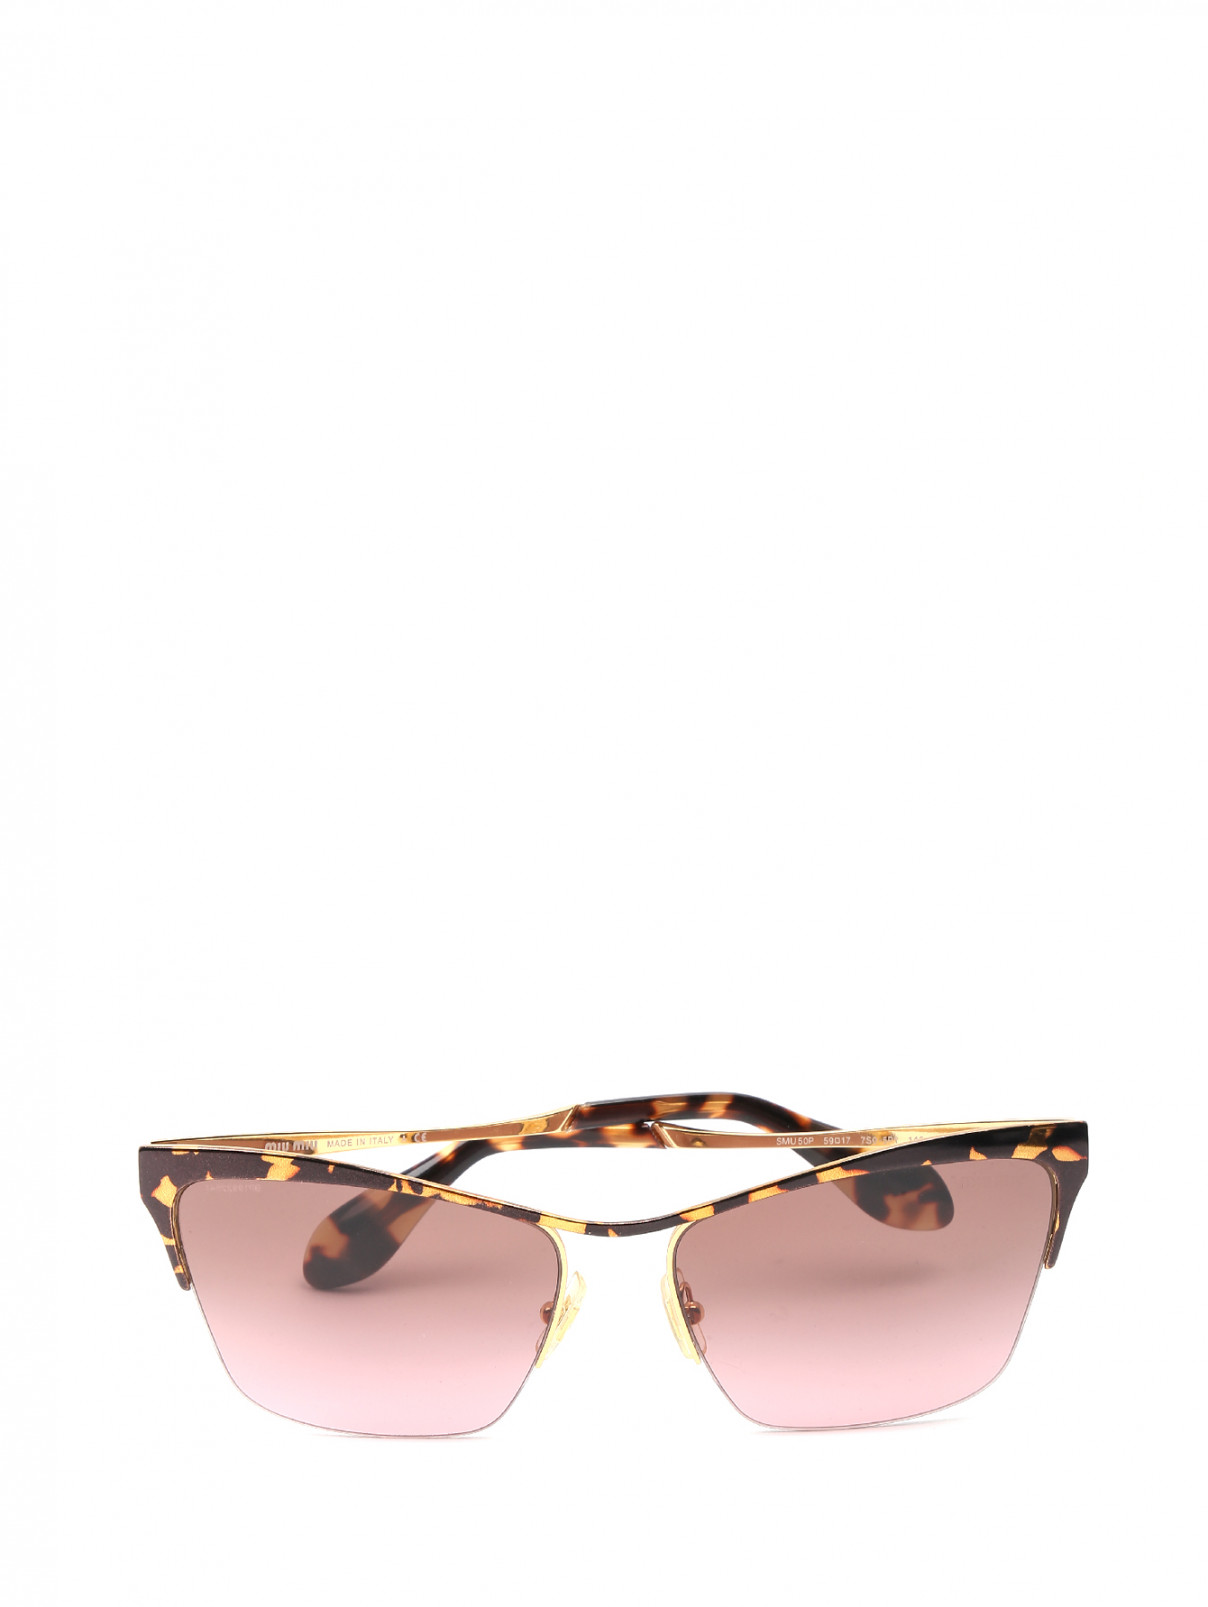 Солнцезащитные очки в оправе из металла с узором Miu Miu  –  Общий вид  – Цвет:  Коричневый